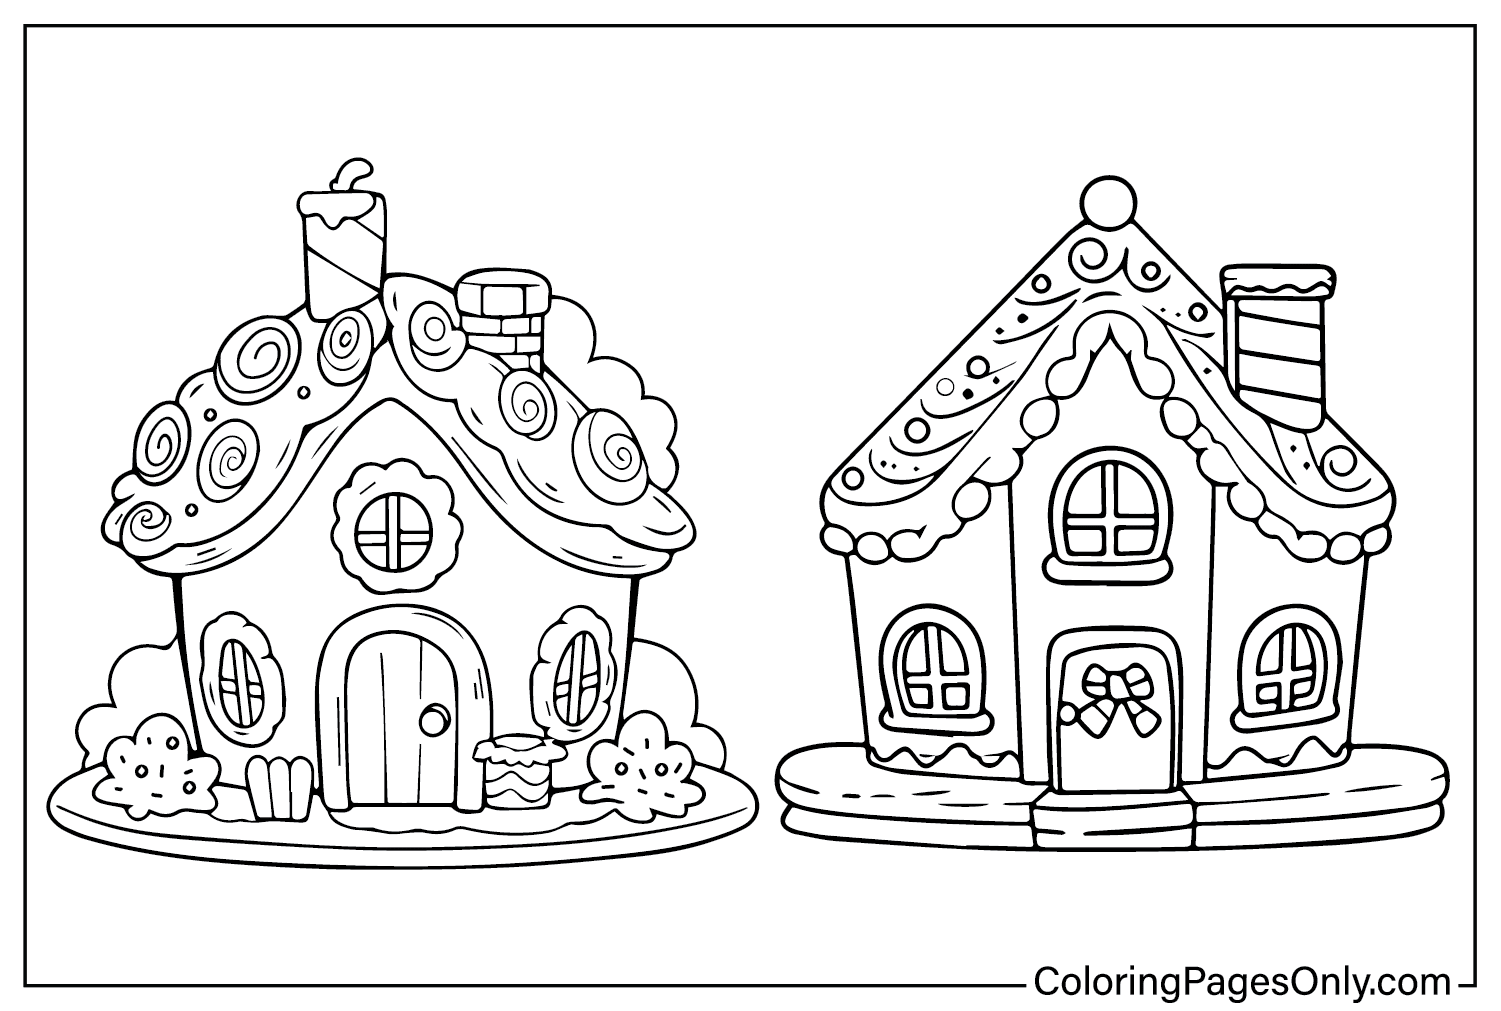 Página para colorear de la casa de jengibre PDF de Gingerbread House